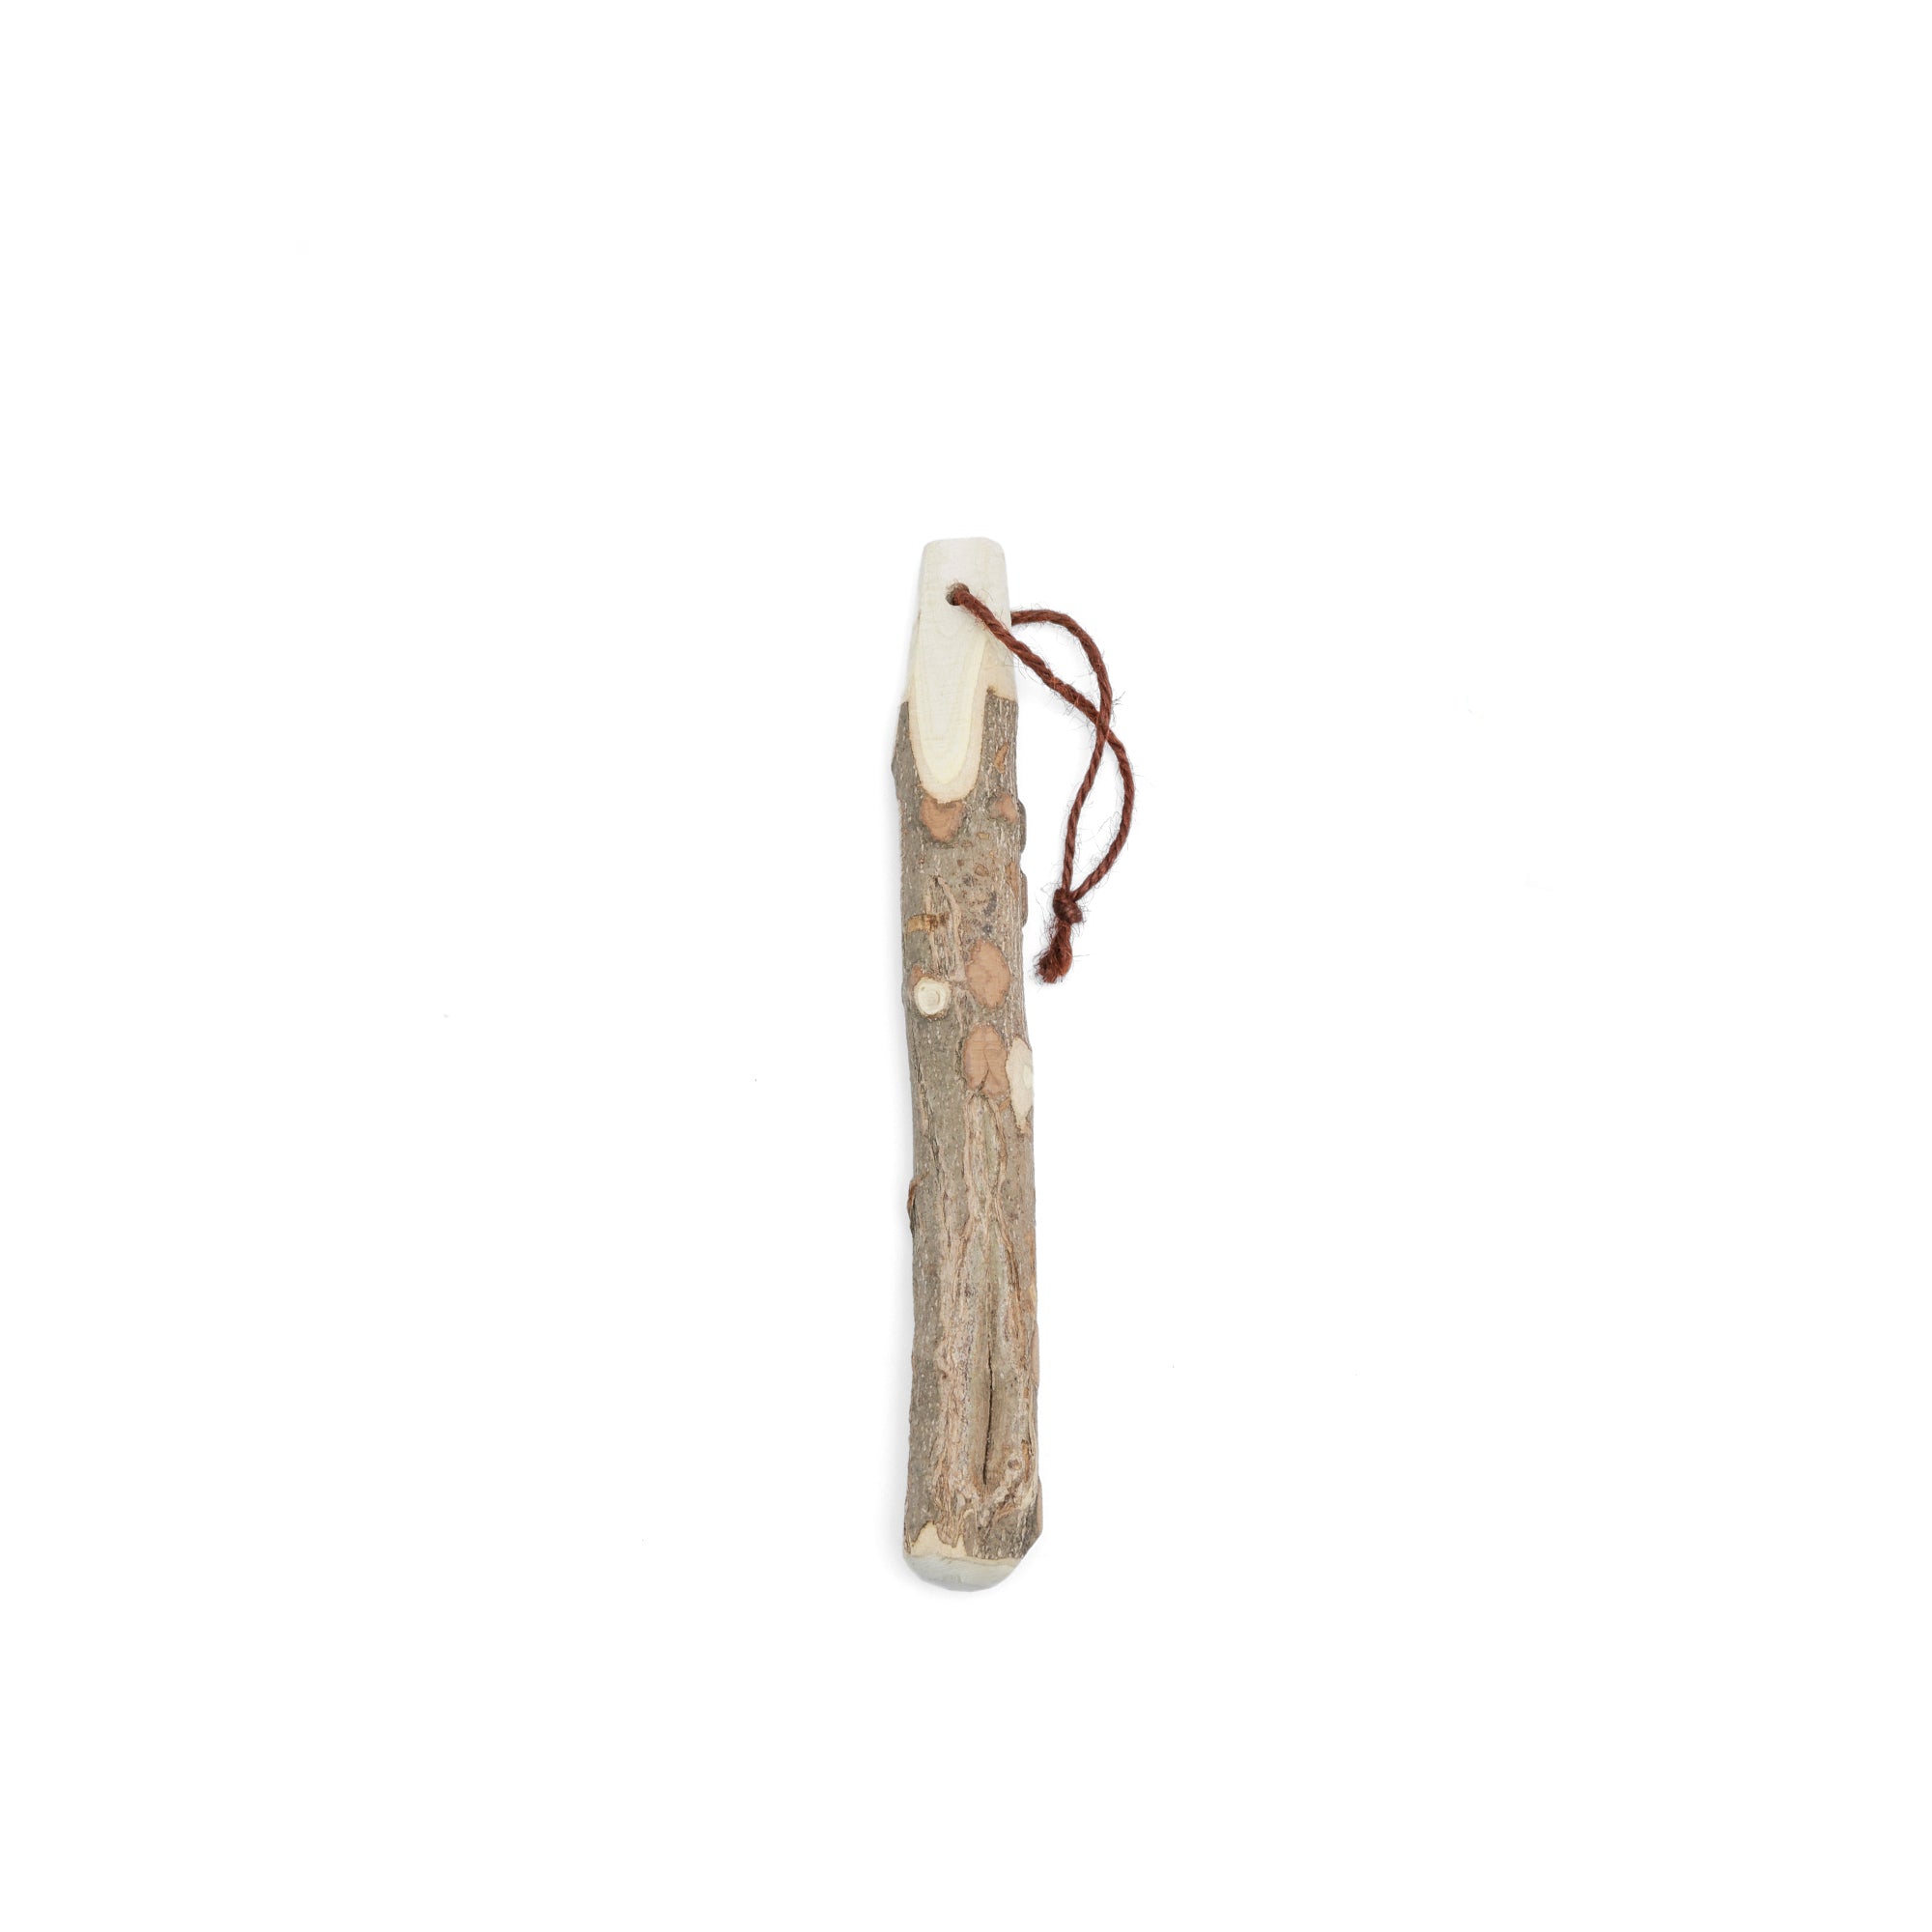 Surikogi Wood Pestle Stick, Medium